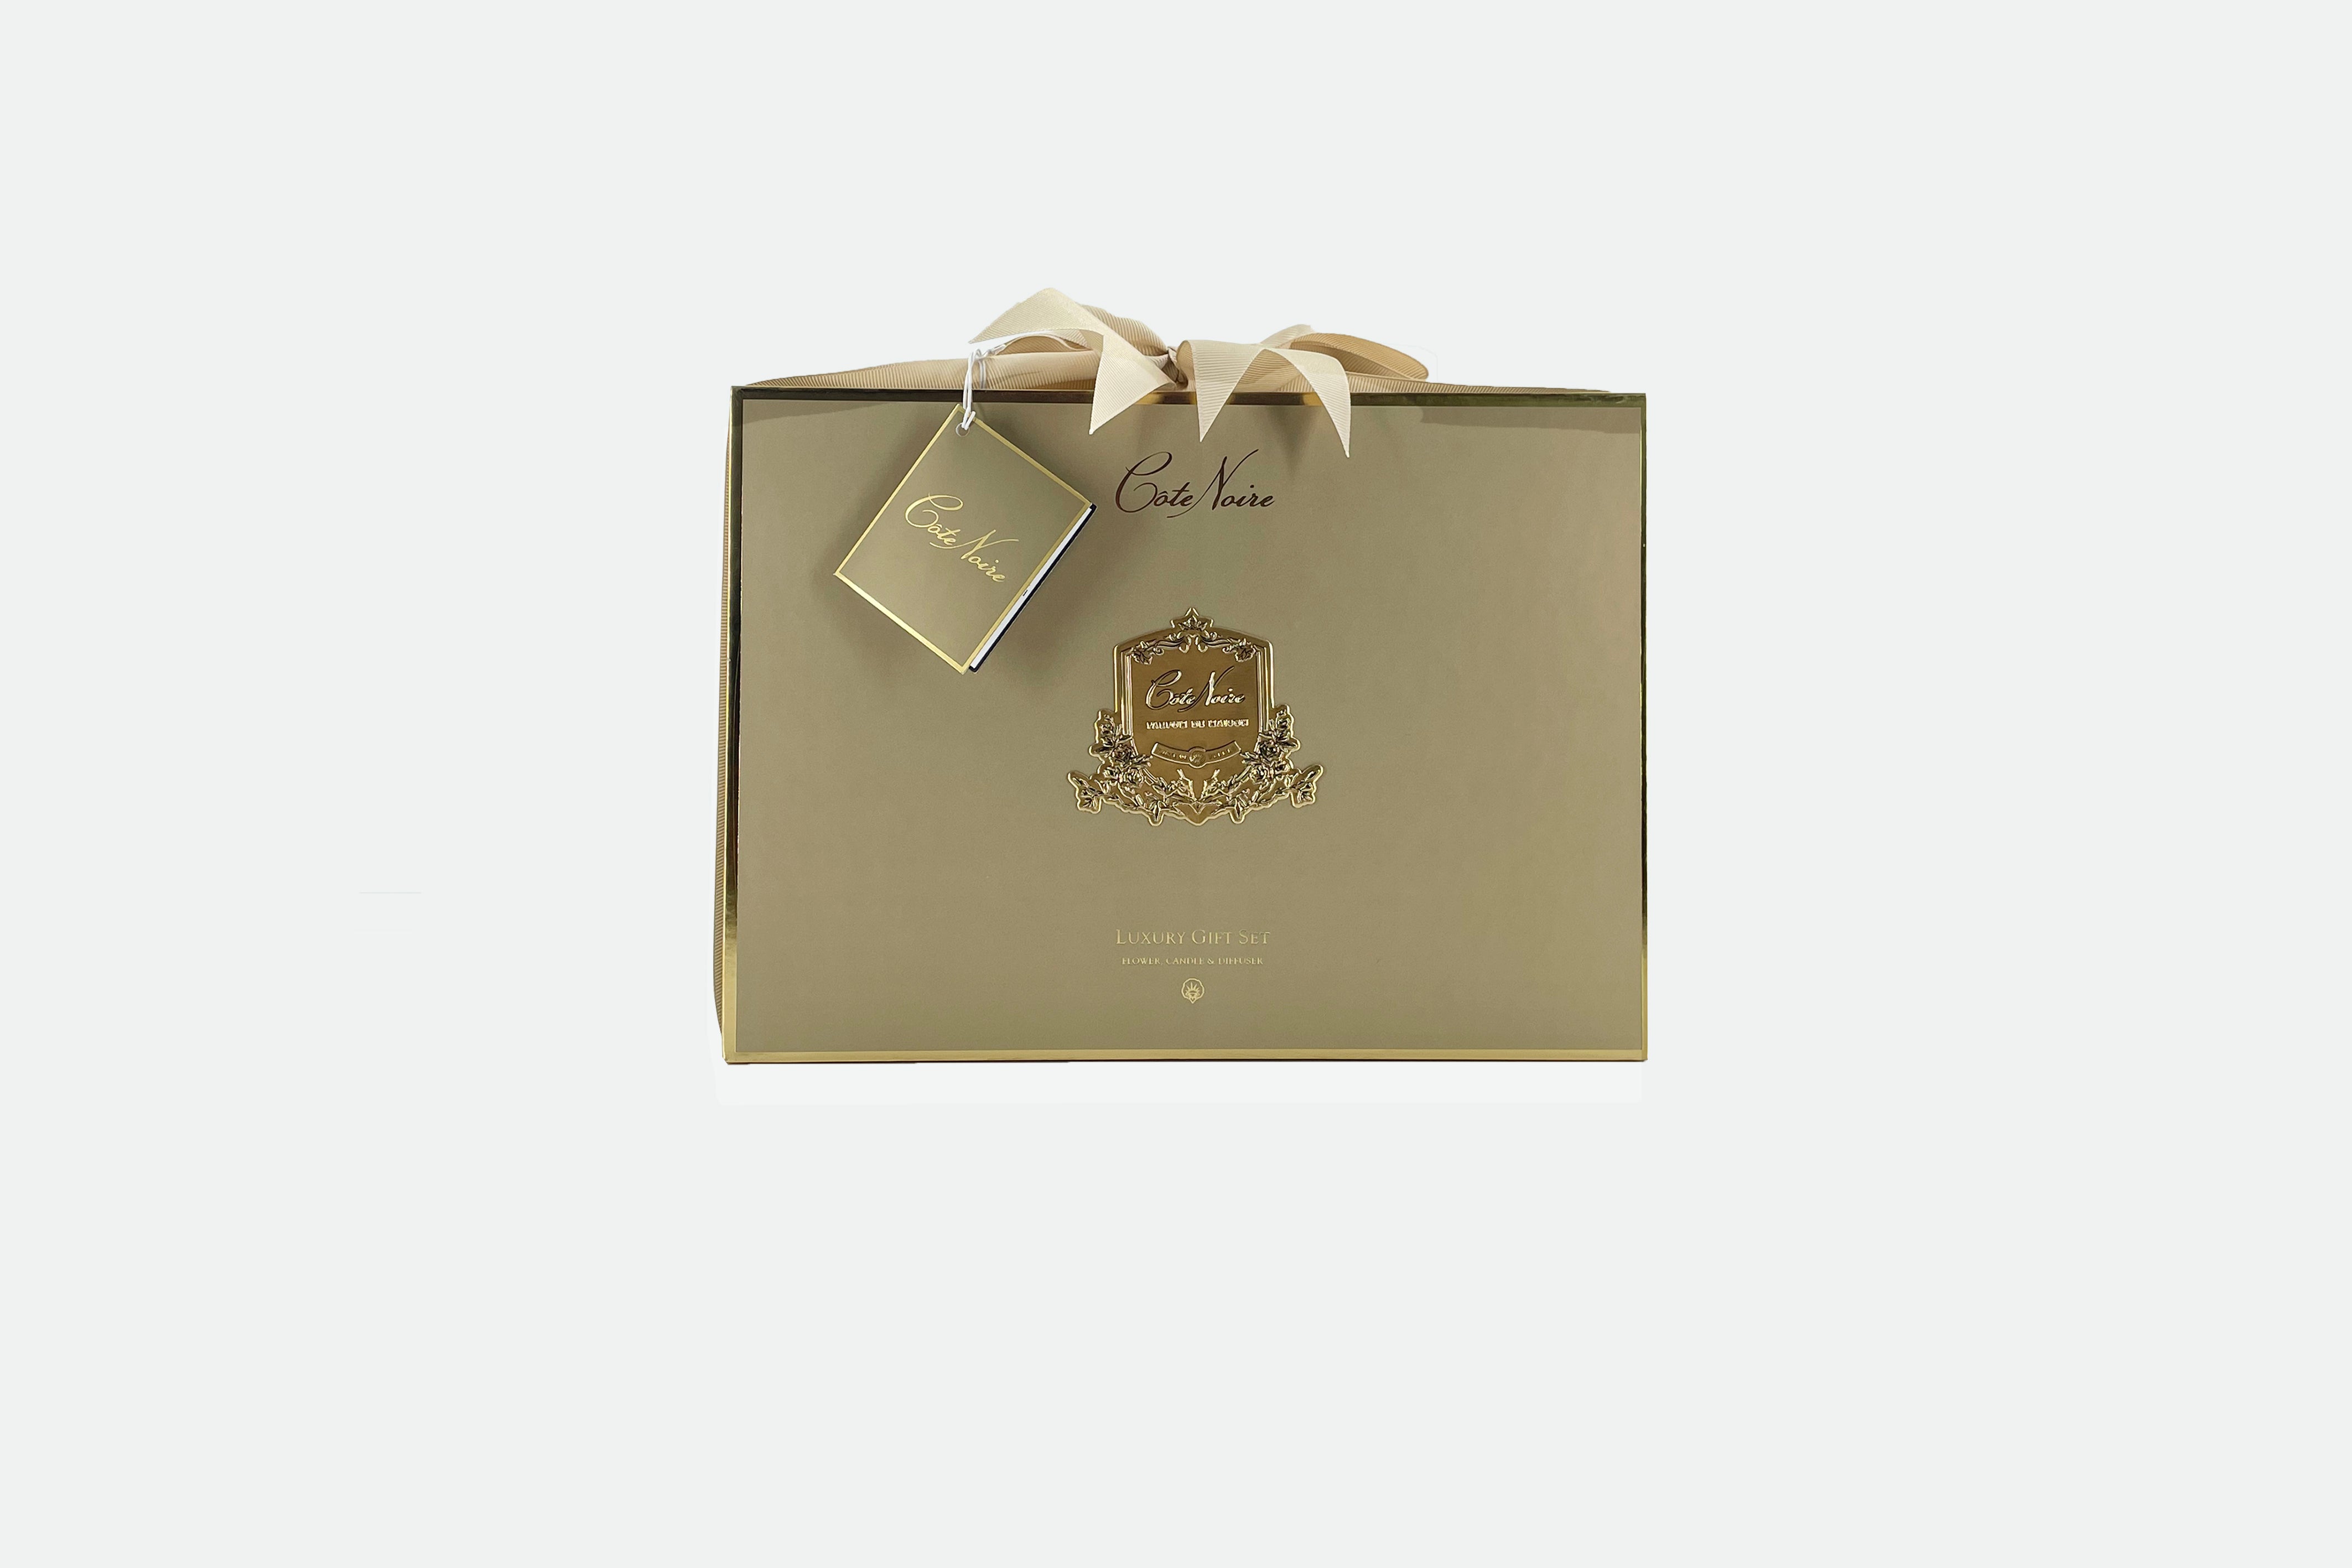 edle goldene geschenkverpackung mit goldenem emblem und schleife. weisser hintergrund.